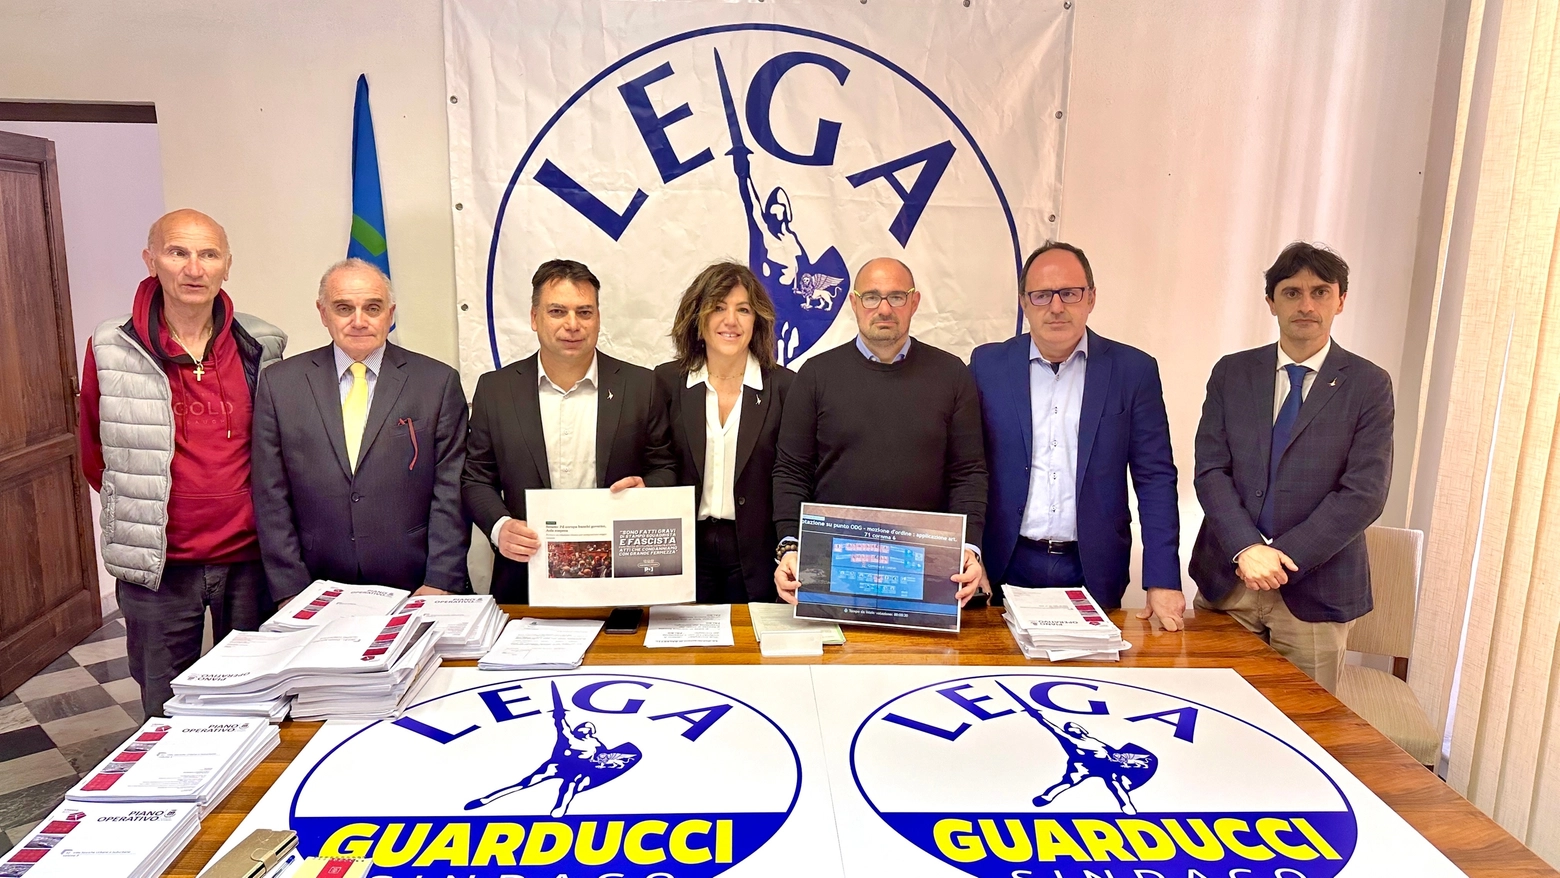 Il Piano operativo comunale di Livorno finisce in Tribunale dopo l'adozione tormentata avvenuta tra il 5 e 6 aprile in consiglio